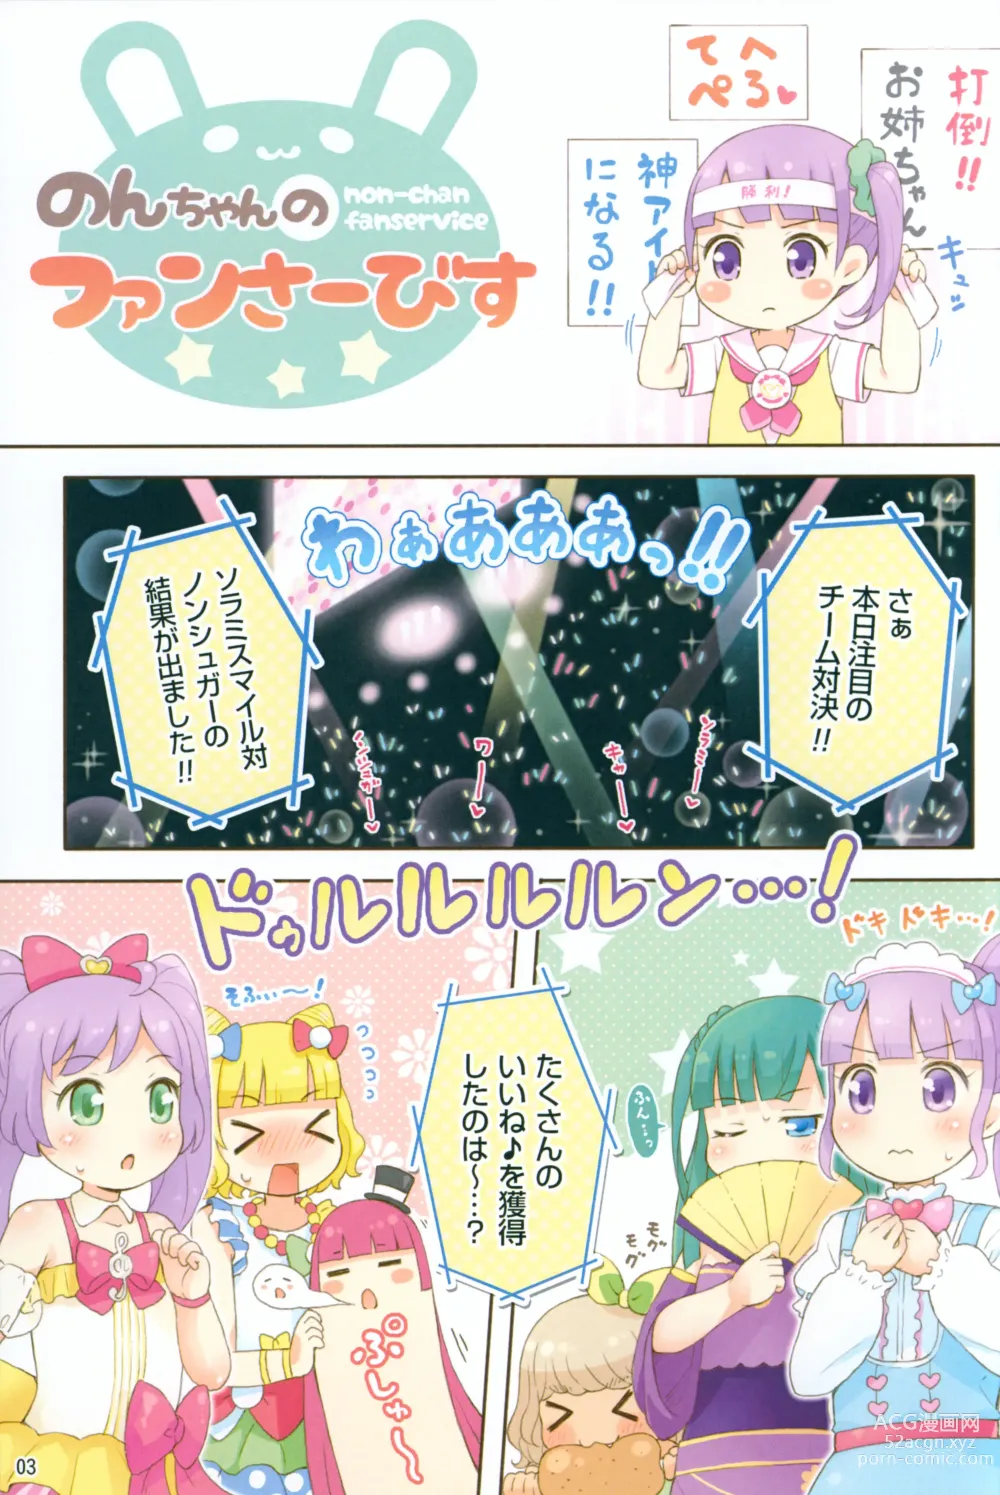 Page 2 of doujinshi [Momomoya (Mizuno Mumomo) Non-chan no Fanservice